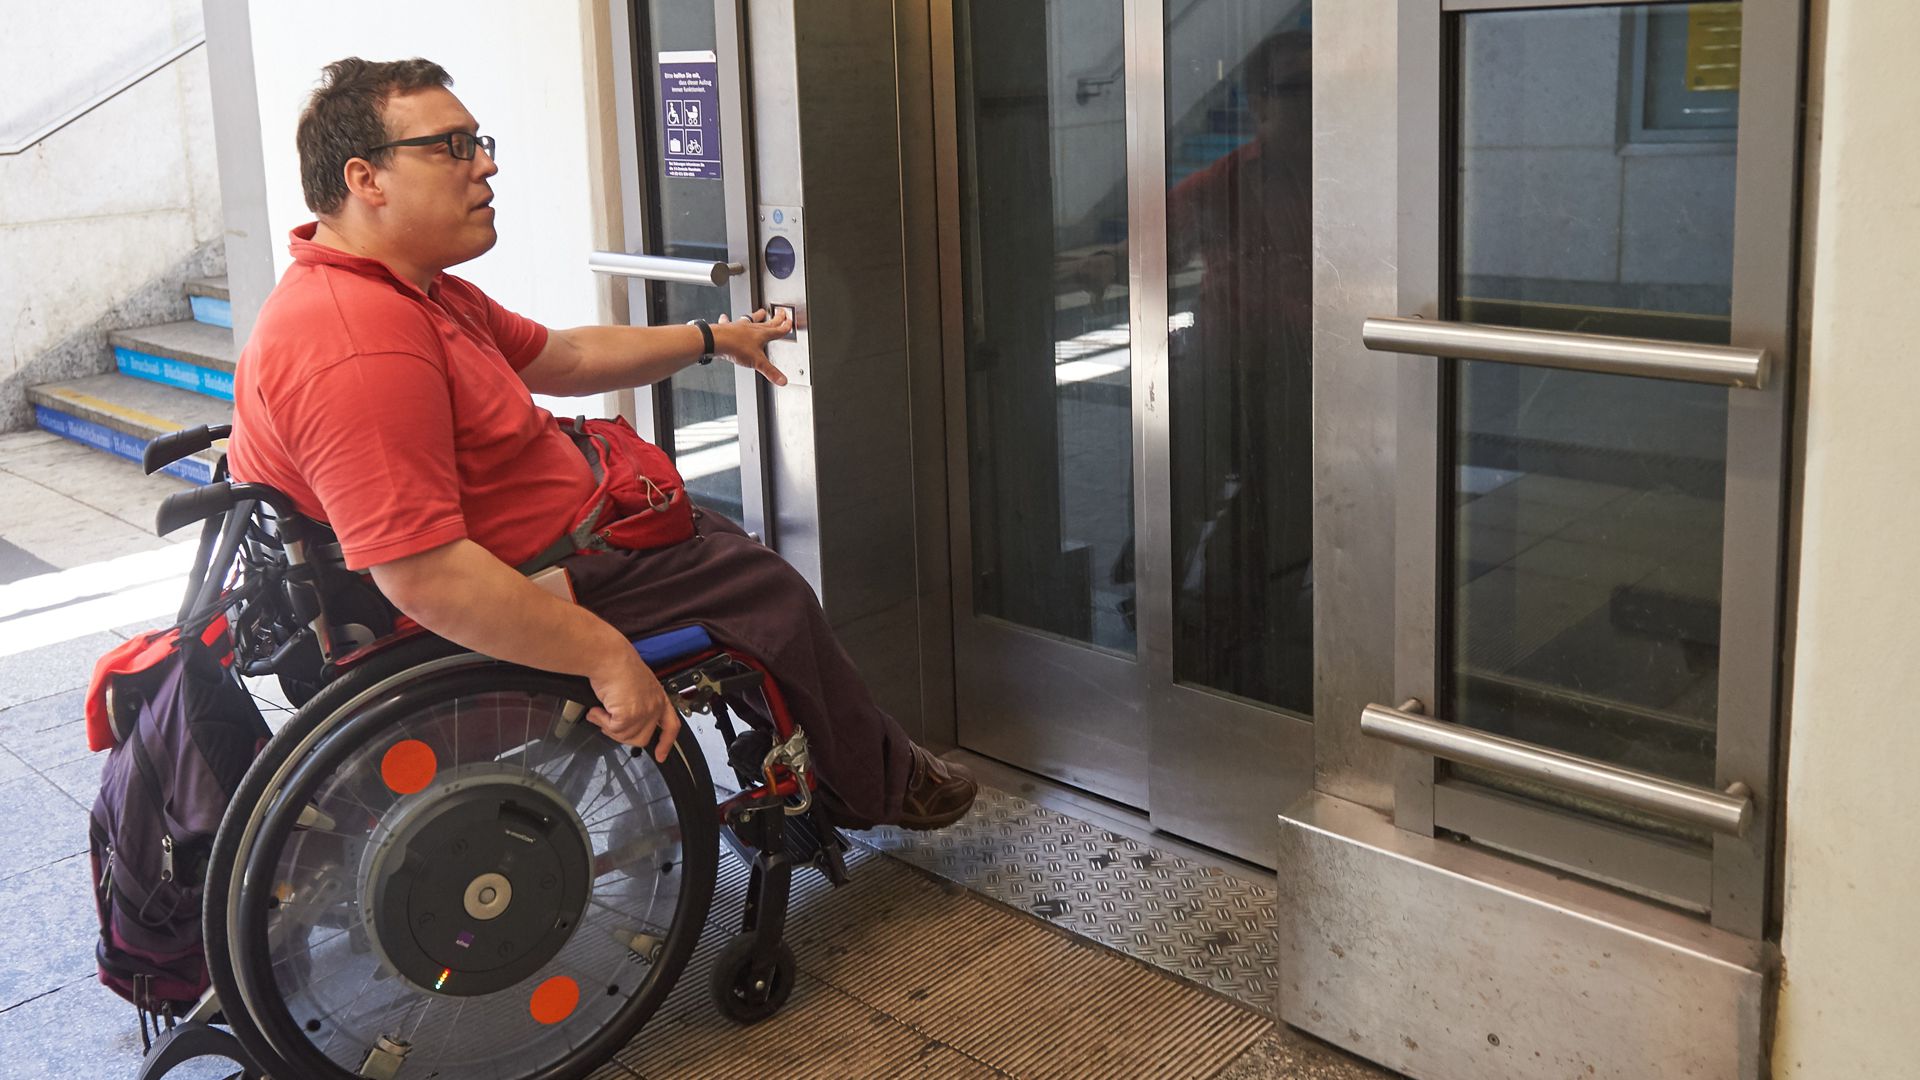 Noch funktionieren die Aufzüge im Bruchsaler Bahnhof: Doch schon bald kann Michael Berger dort nicht mehr aussteigen. Der Bruchsaler soll mit seinem Rollstuhl dann eben in Ubstadt oder am Gewerblichen Bildungszentrum aussteigen, findet die Bahn. 